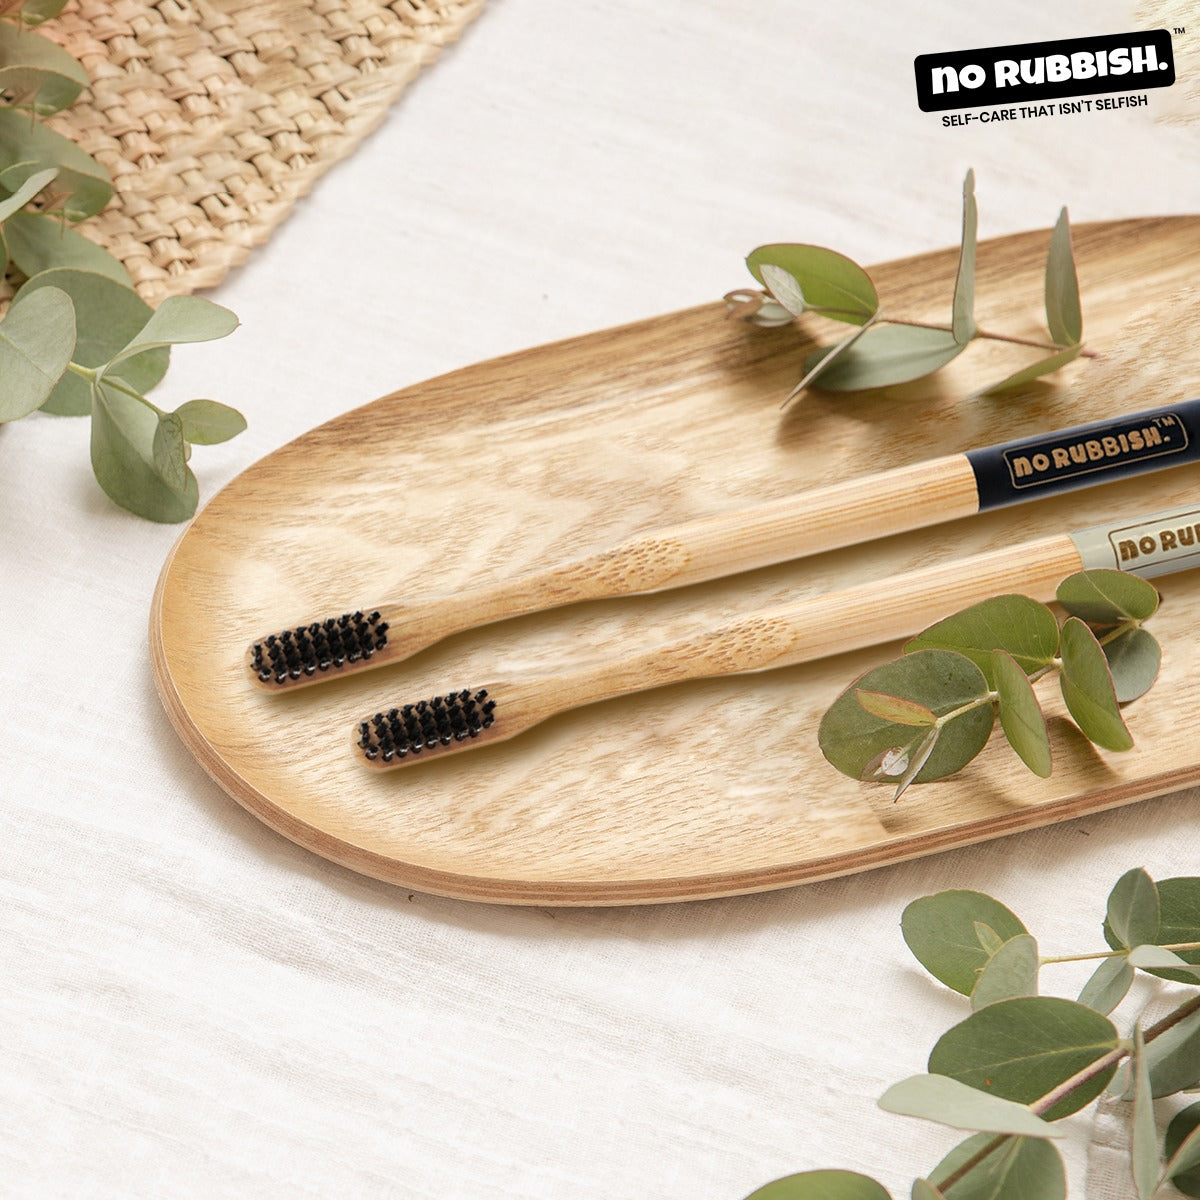 Bamboo Toothbrush